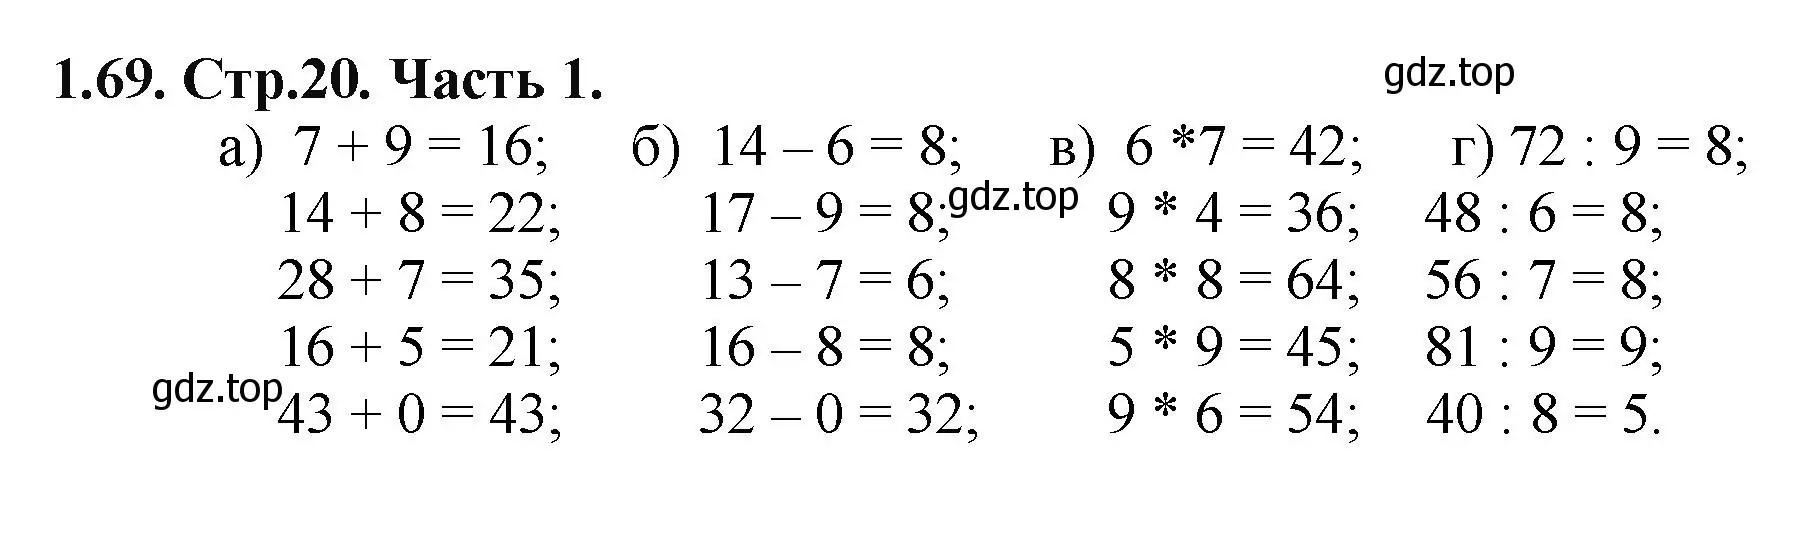 Решение номер 1.69 (страница 20) гдз по математике 5 класс Виленкин, Жохов, учебник 1 часть